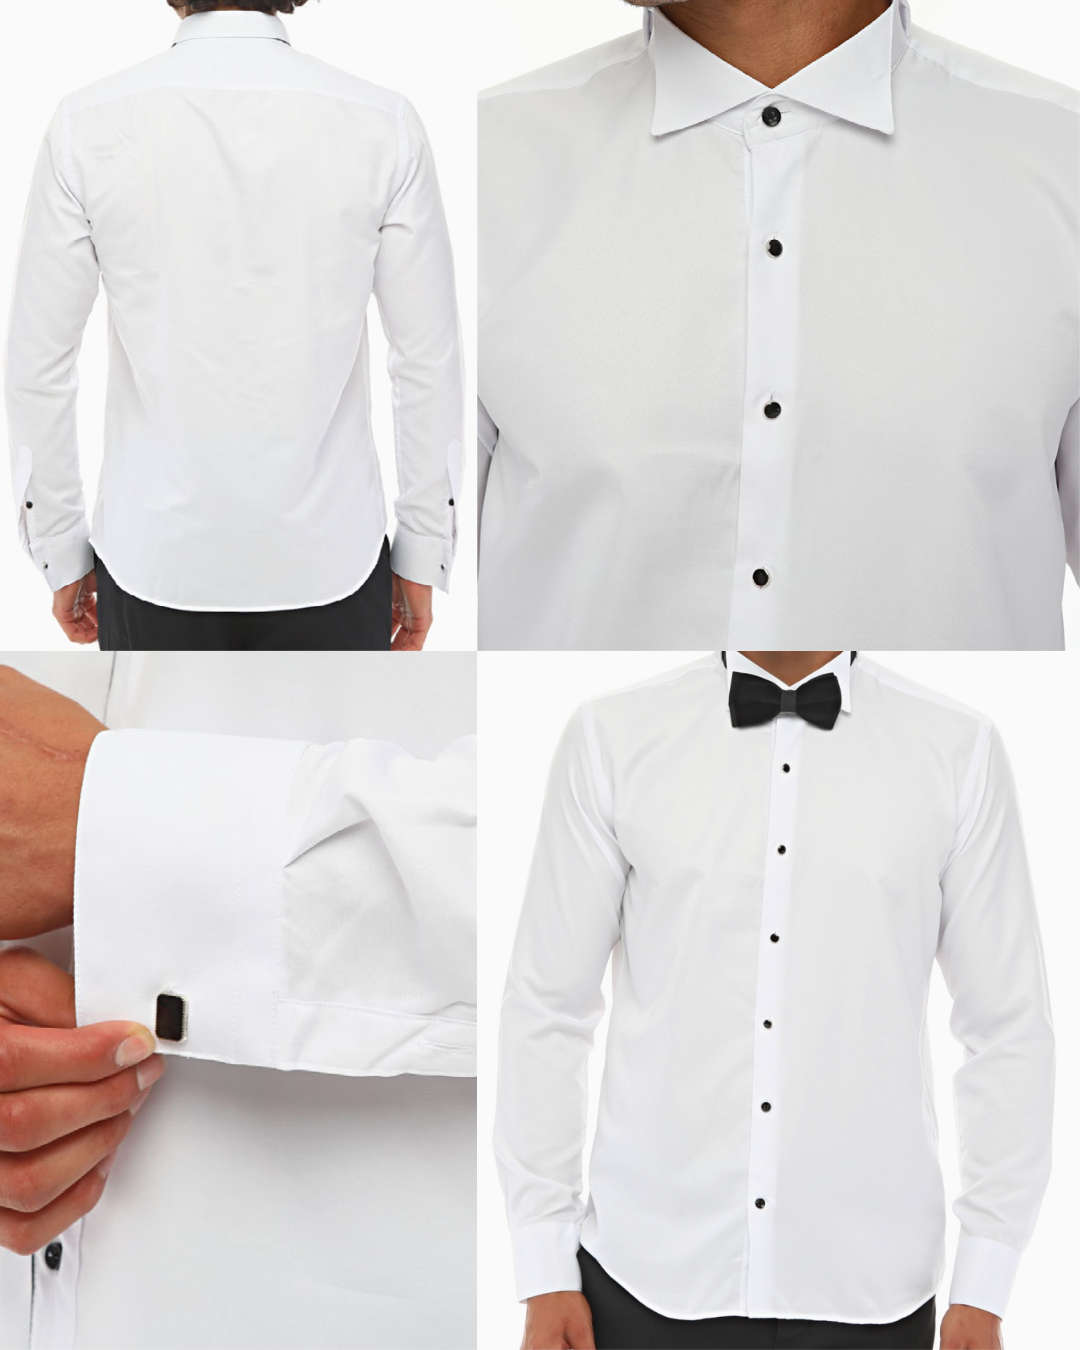 ICONIC TUXEDO I - White Plain Tuxedo Shirt With Studs